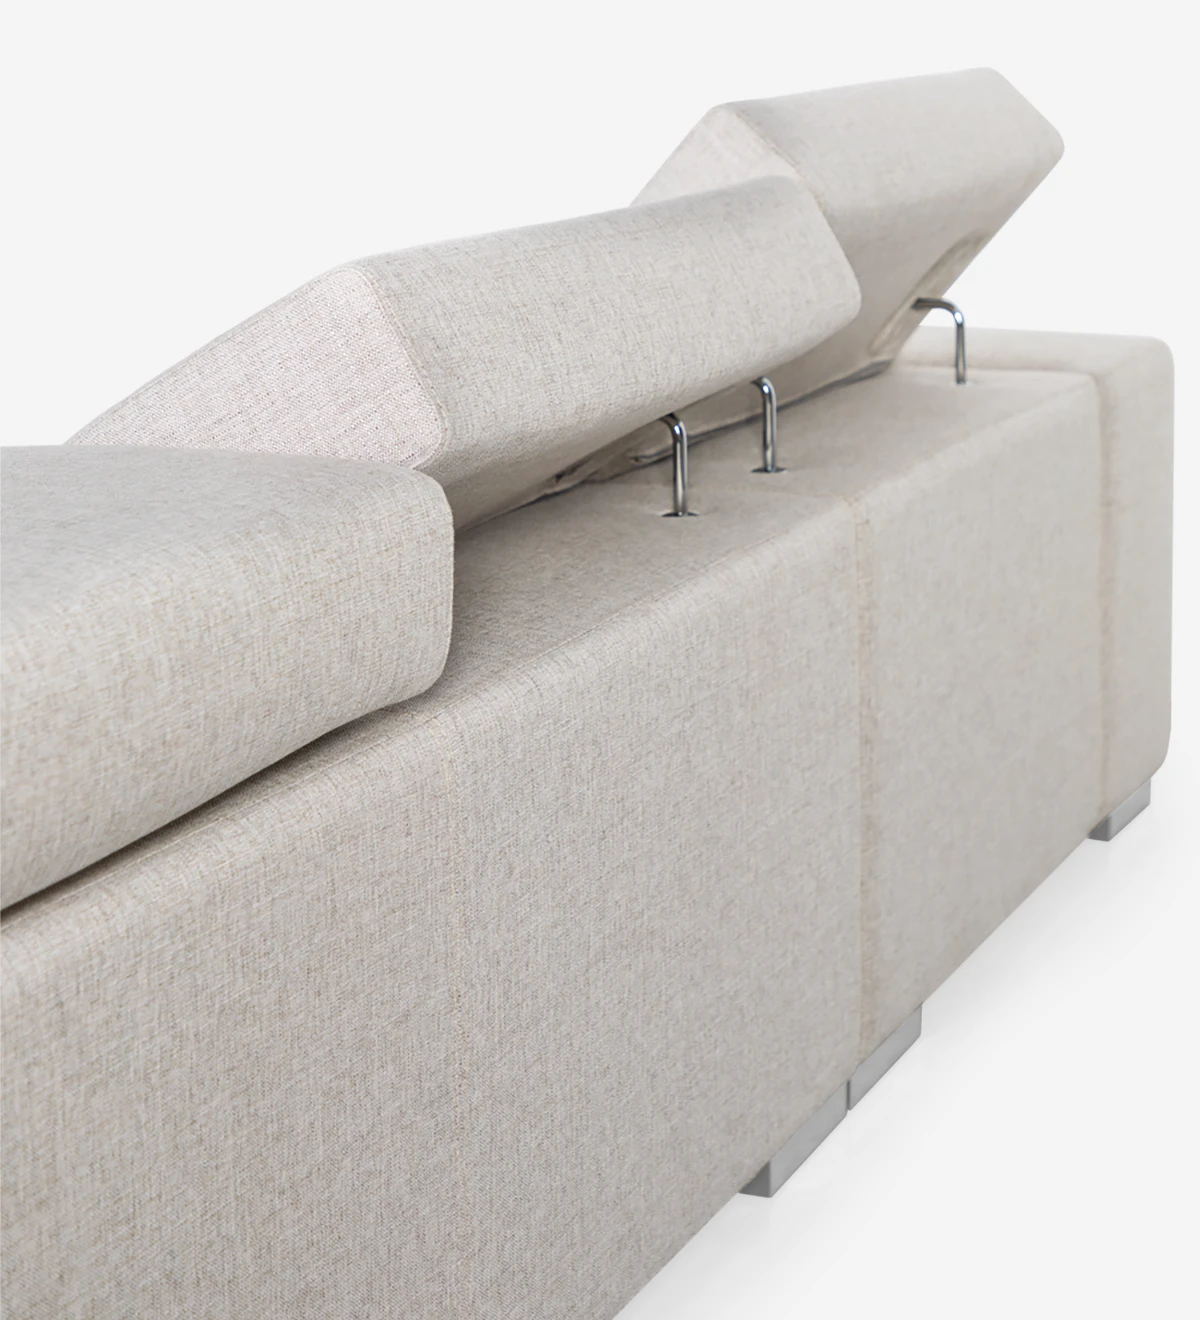 Sofá de 2 lugares com chaise longue, estofado a tecido, com apoios de cabeça reclináveis e pés metálicos.